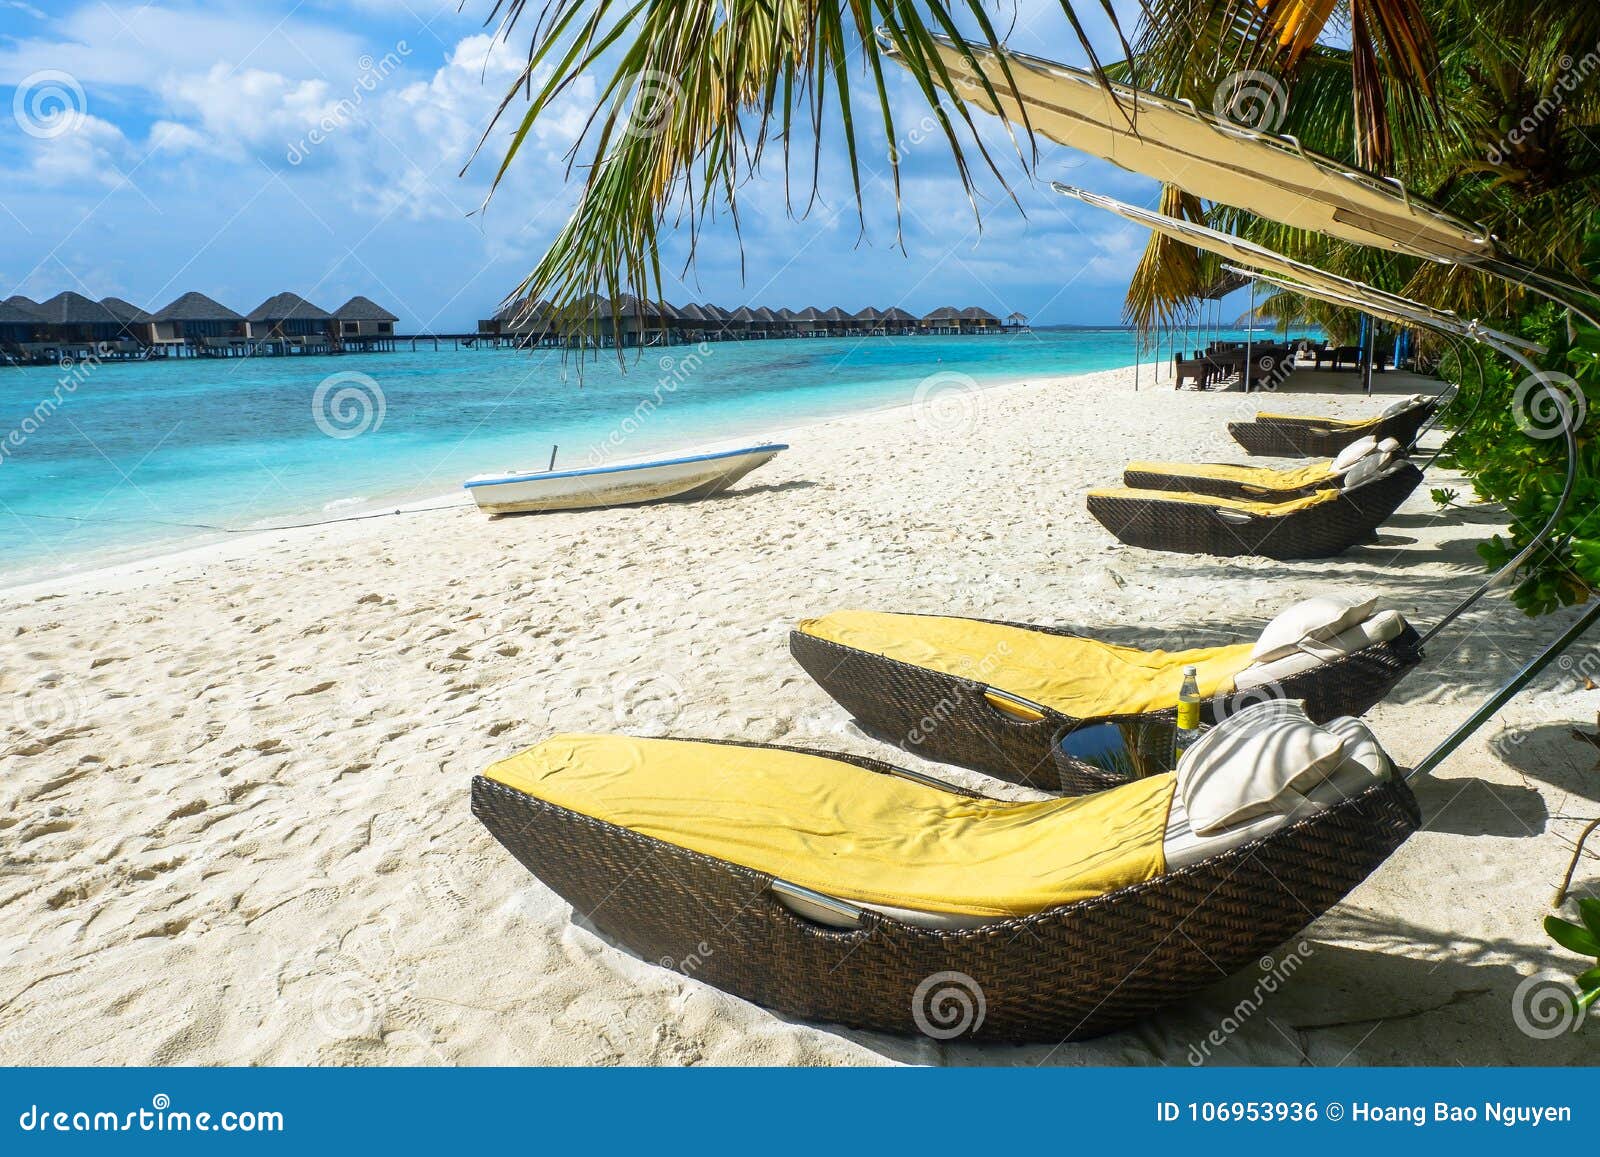 best all-inclusive maldives water-villa resorts in maldives